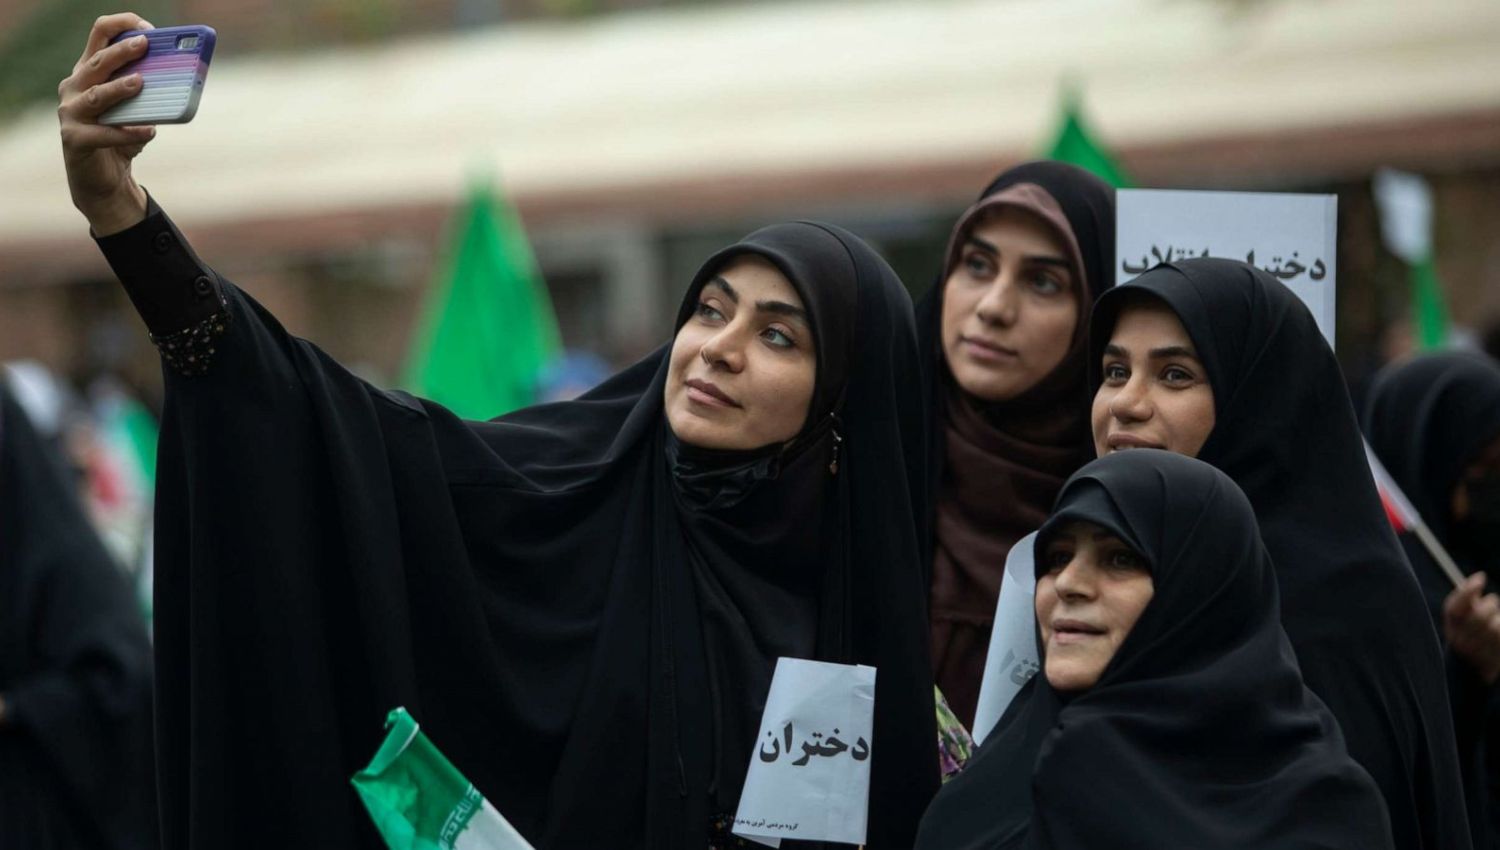 المرأة في إيران: مسار تطوري أسرع من الدول المجاورة